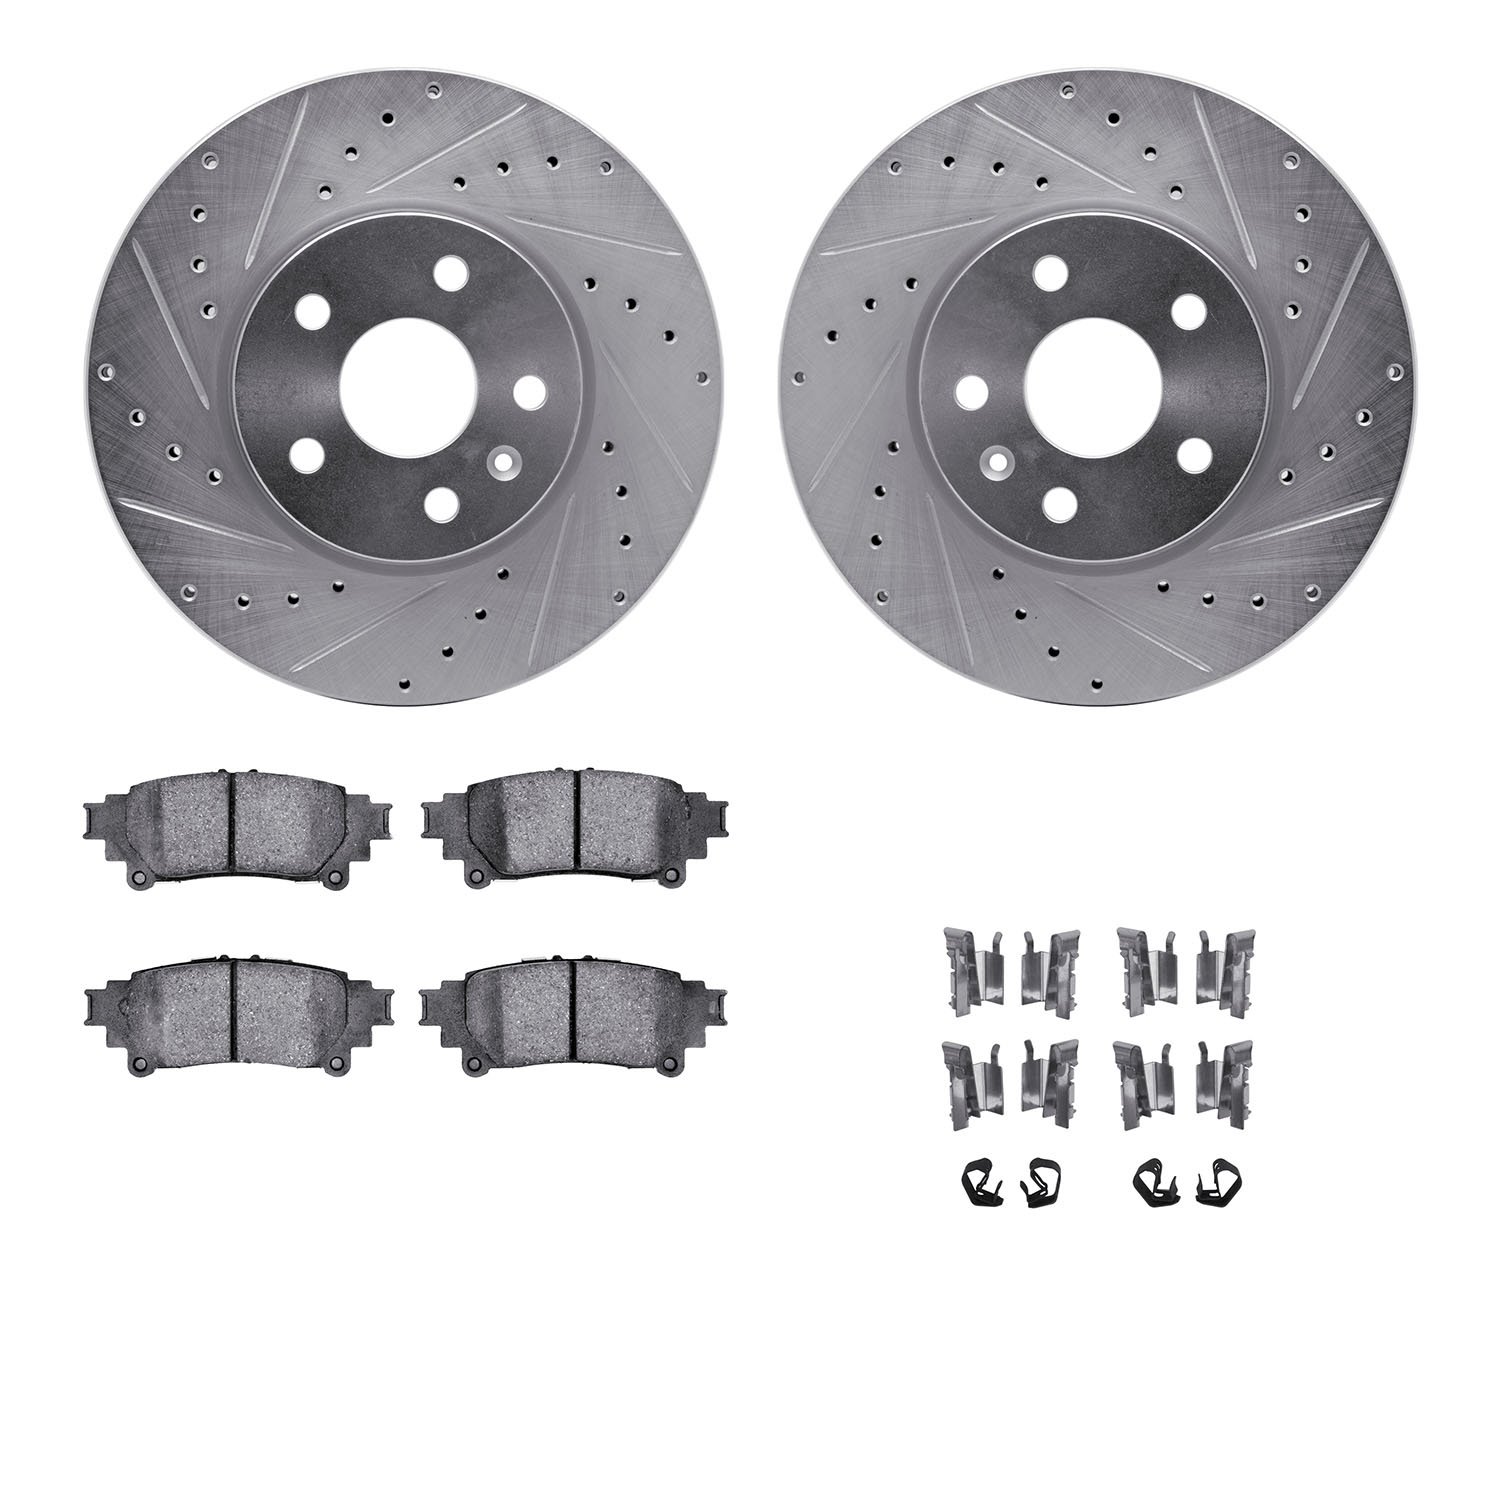 7312-75033 Drilled/Slotted Brake Rotor with 3000-Series Ceramic Brake Pads Kit & Hardware [Silver], 2014-2015 Lexus/Toyota/Scion